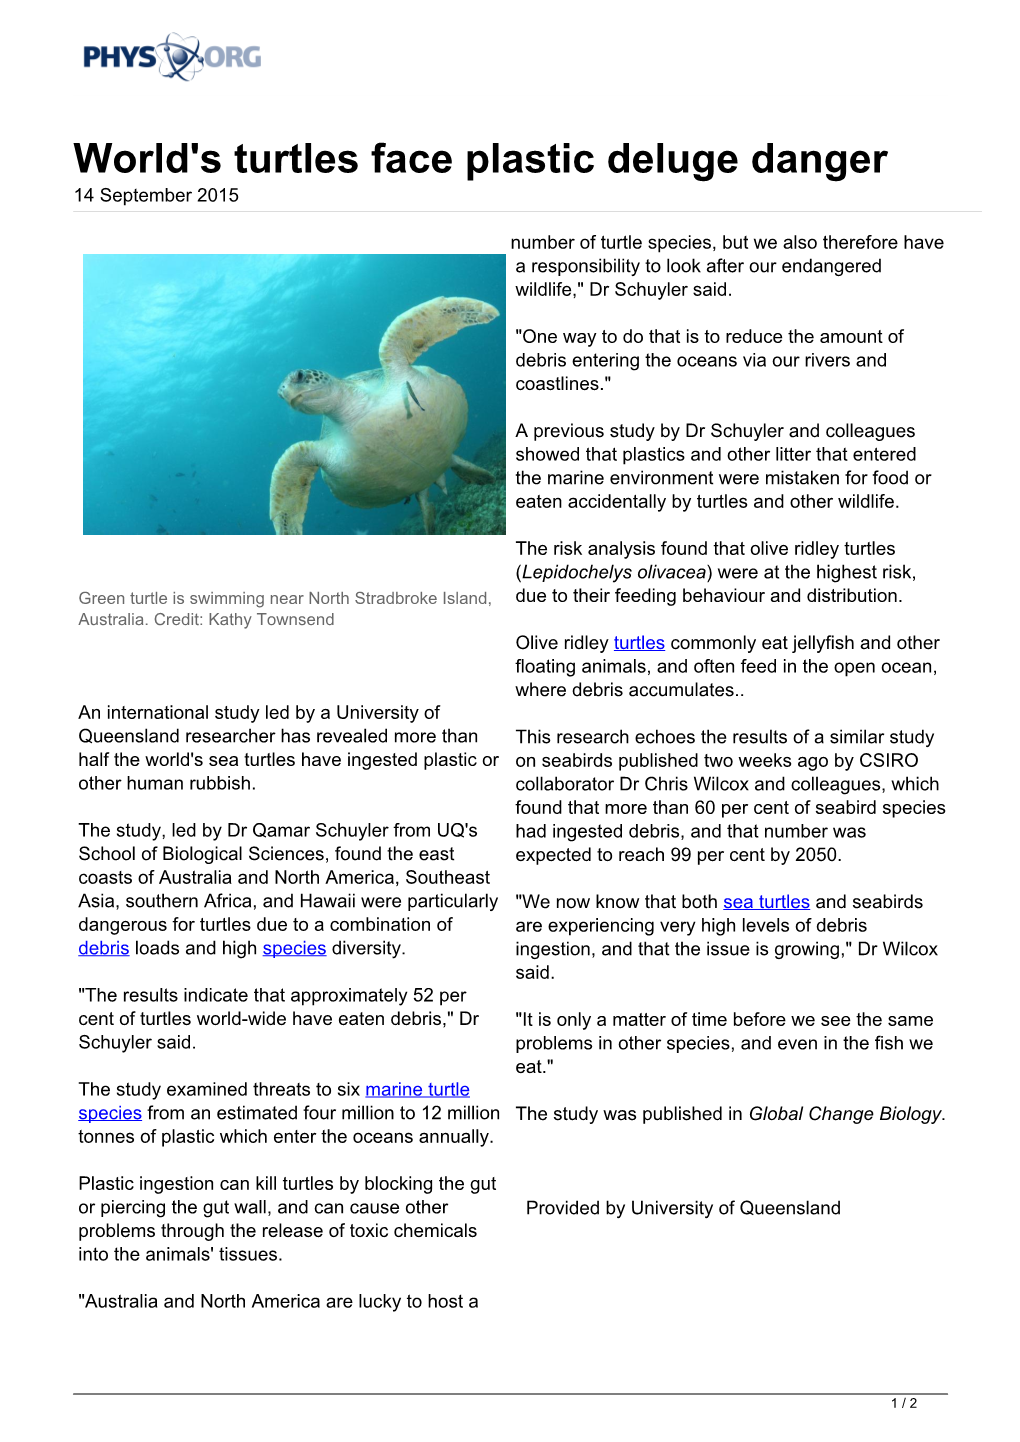 World's Turtles Face Plastic Deluge Danger 14 September 2015